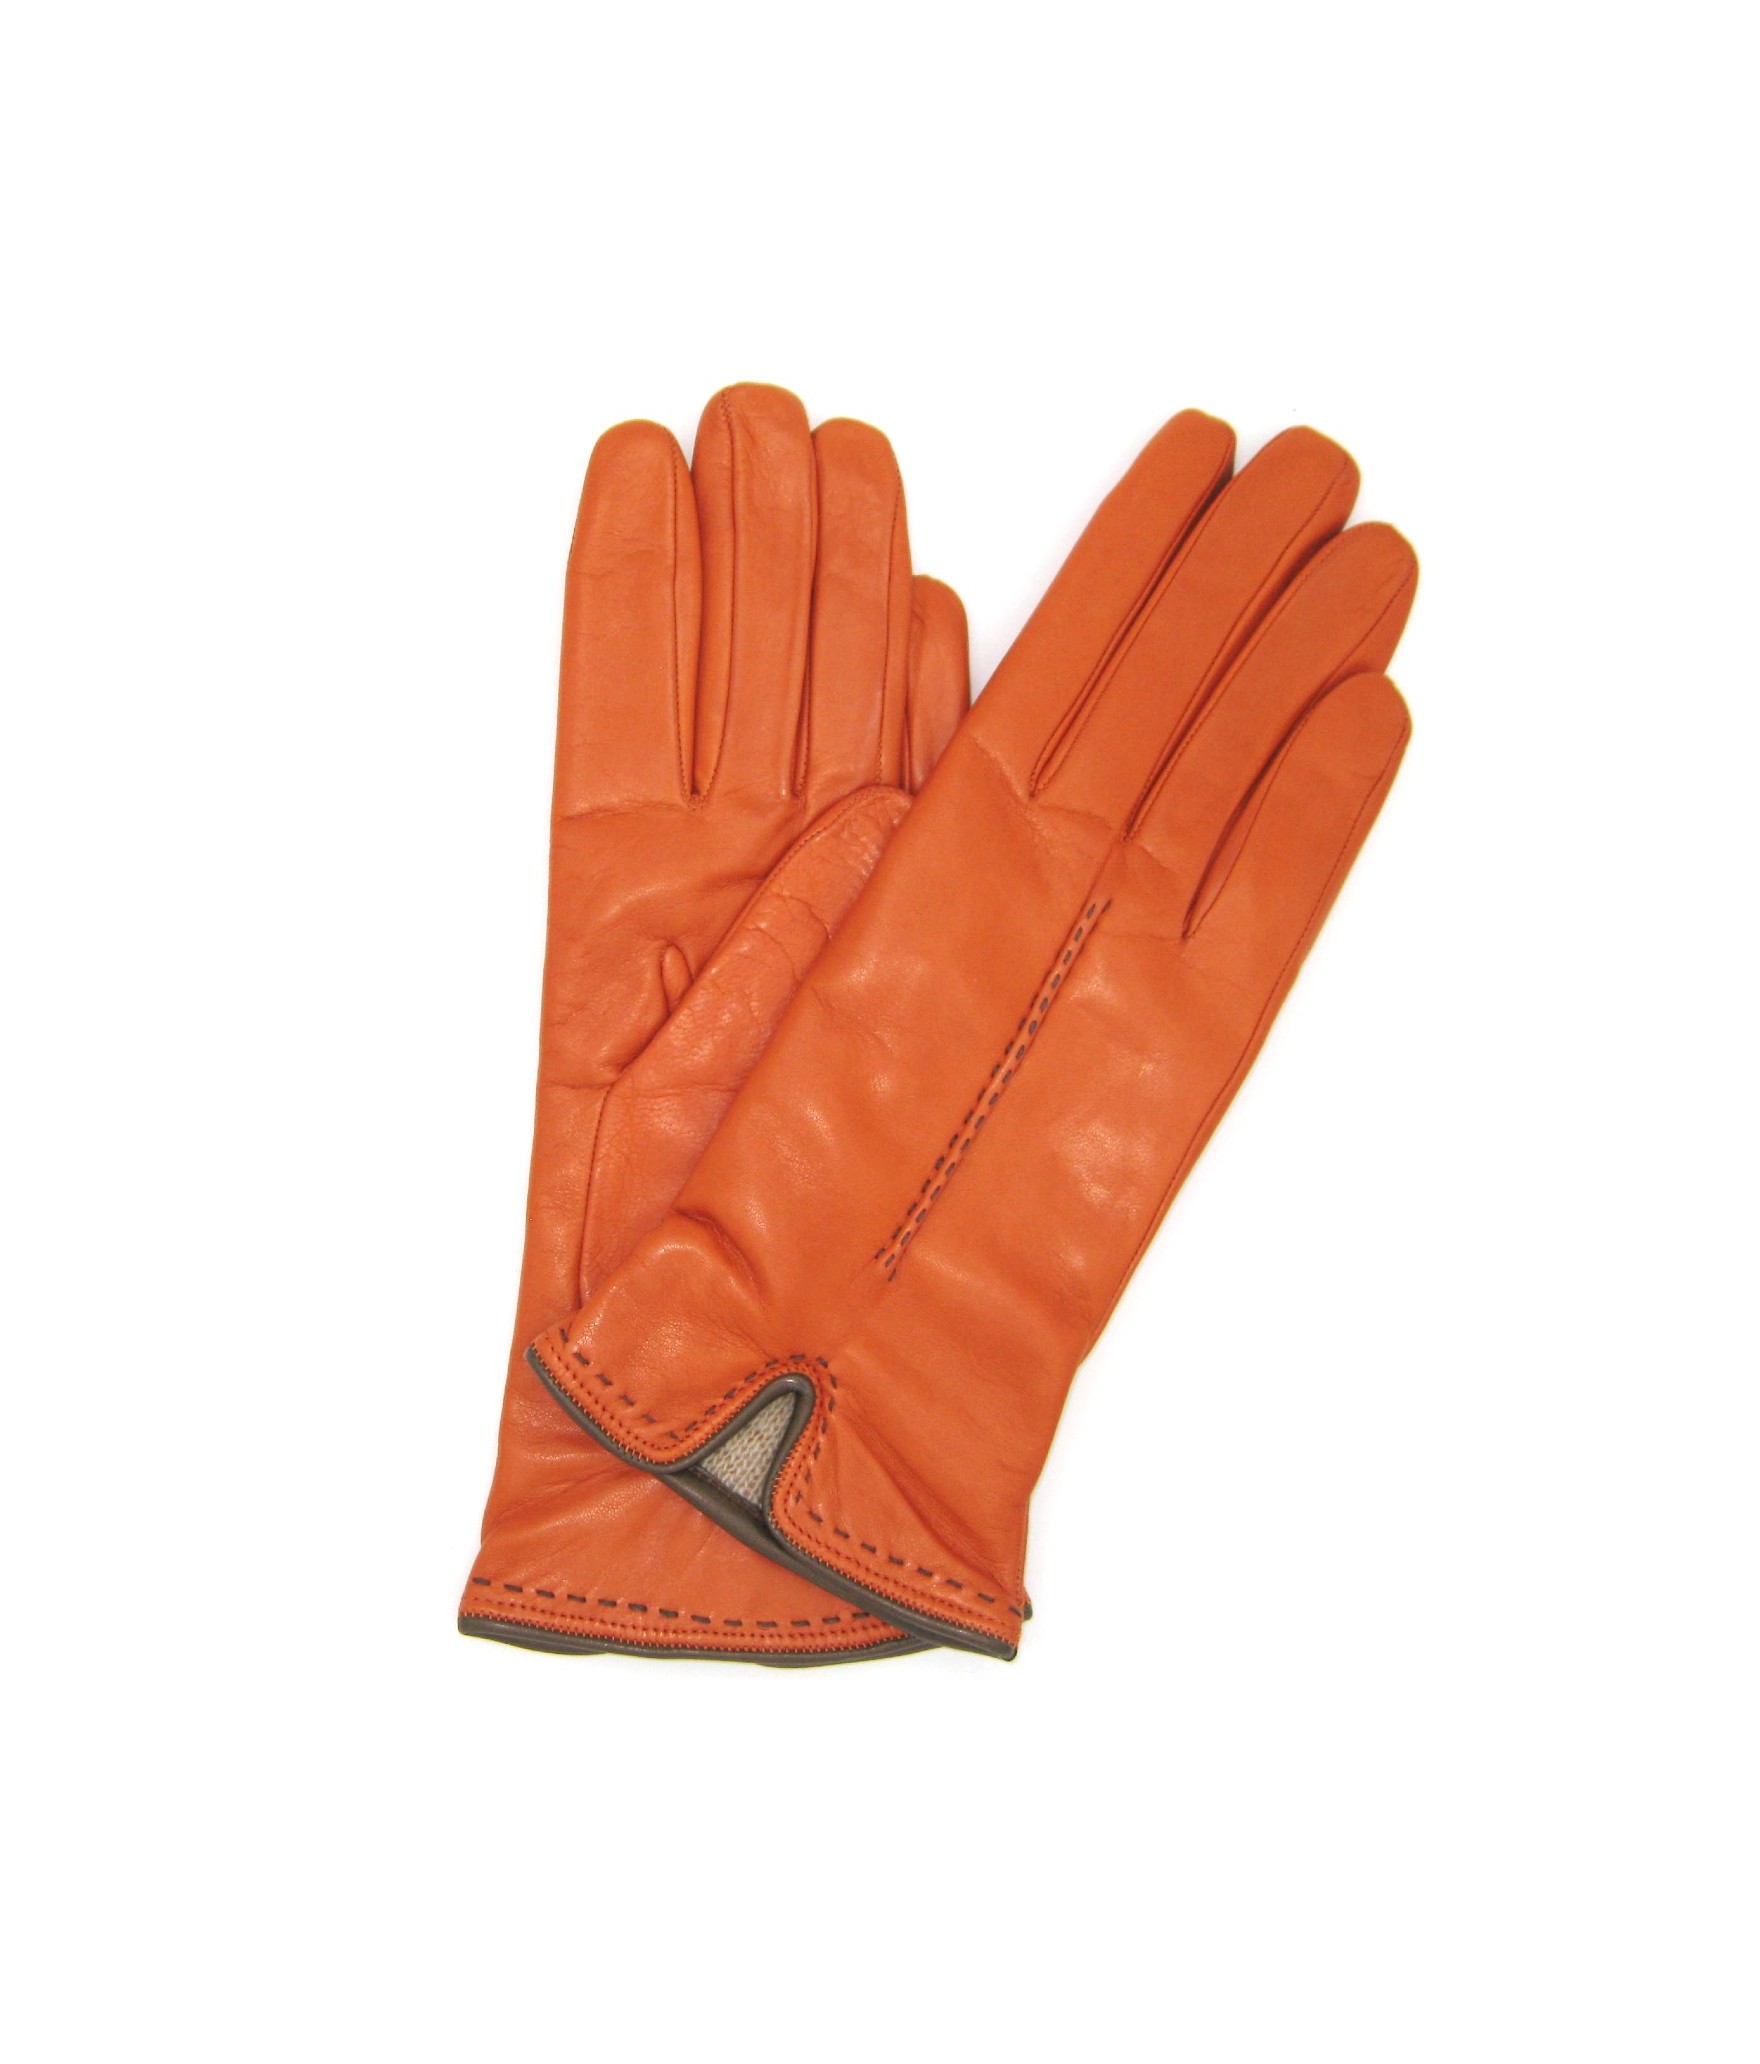 Damen Fashion Nappaleder handschuhe mit handgelenk detail